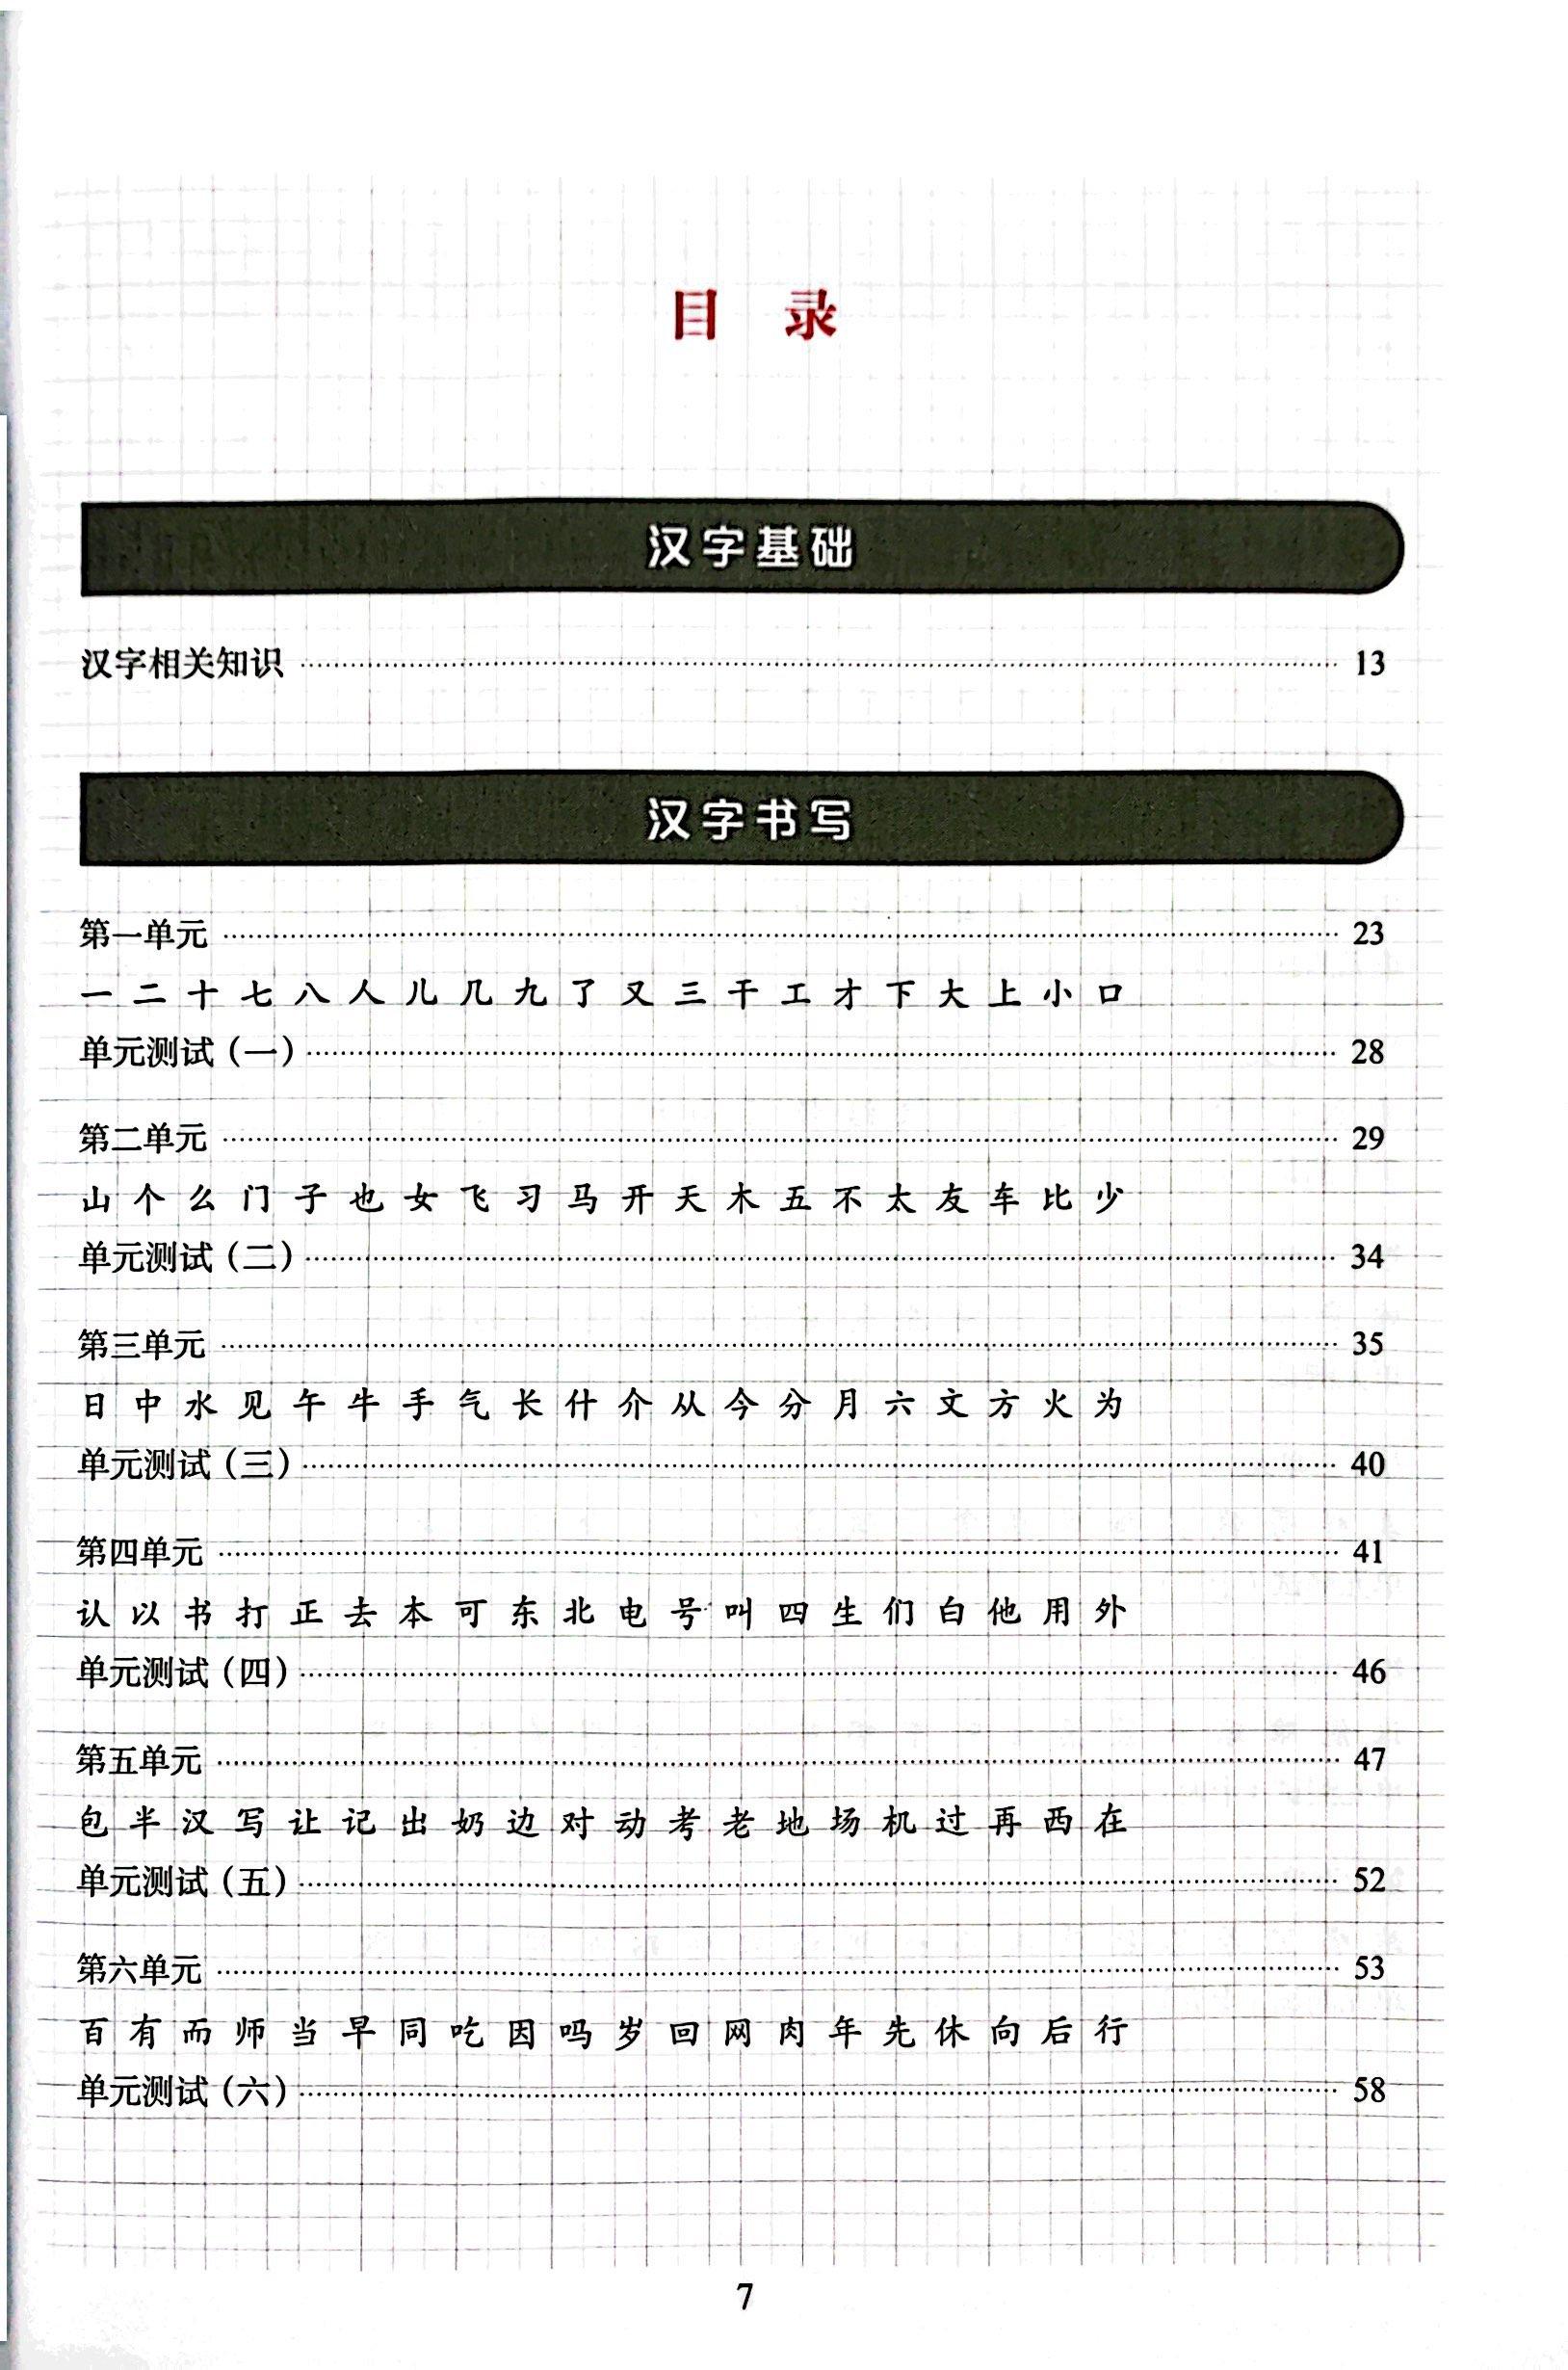 Tiêu Chuẩn Các Cấp Độ Tiếng Trung Trong Giáo Dục Tiếng Trung Quốc Tế - Giáo Trình Tập Viết Chữ Hán - Sơ Cấp